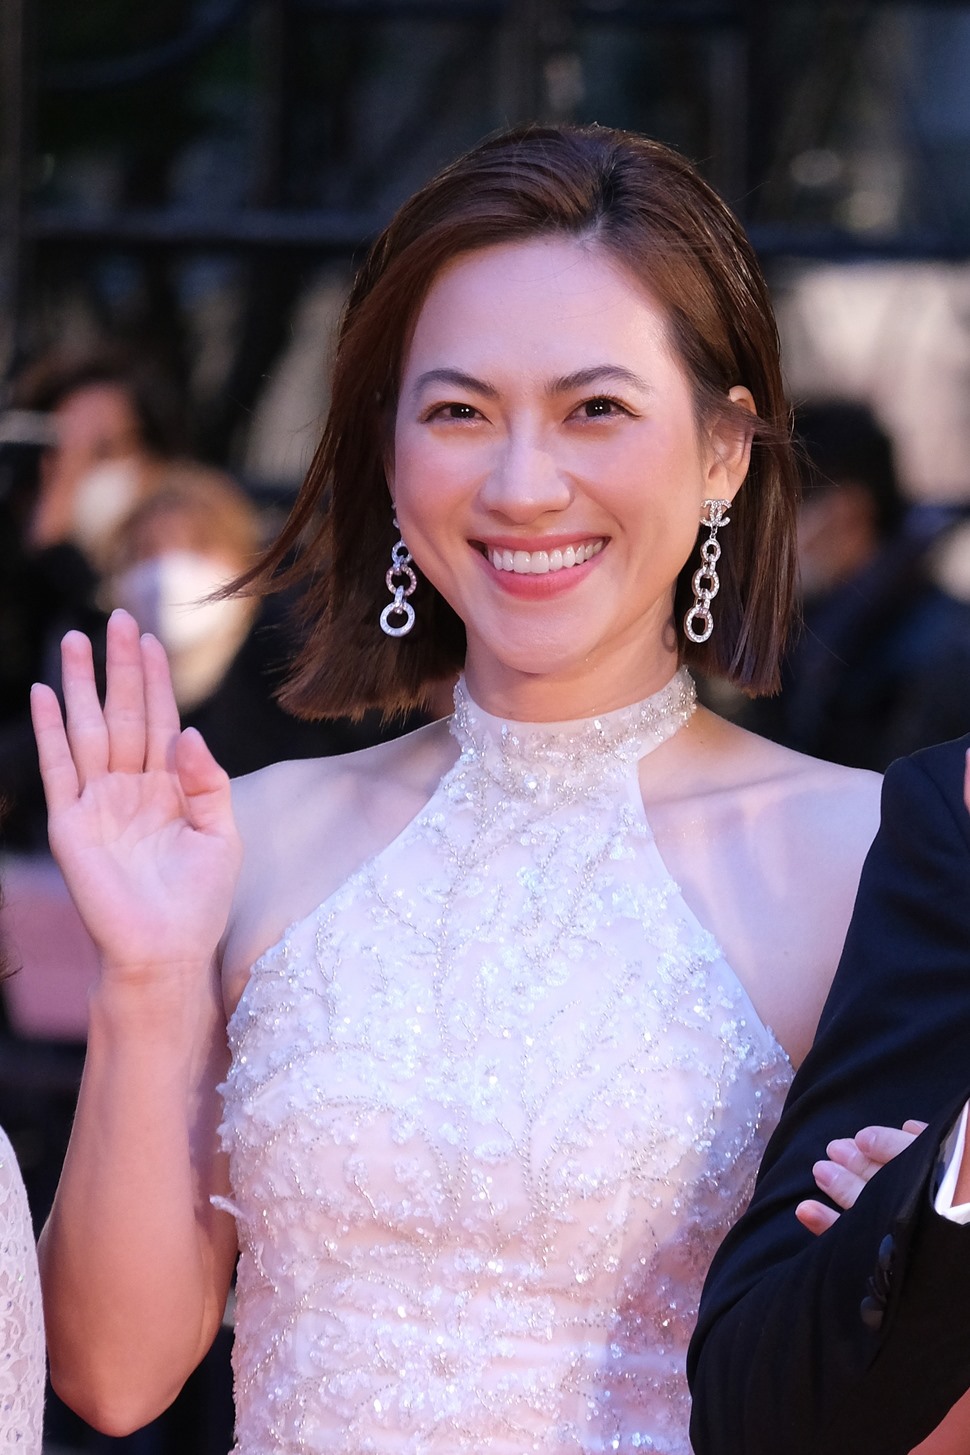 “Tro tàn rực rỡ” là phim Việt Nam đầu tiên được chọn vào hạng mục tranh giải chính thức của Liên hoan phim quốc tế Tokyo. Trong phim, Phương Anh Đào hóa thân thành nhân vật Nhàn kết đôi cùng diễn viên Quang Tuấn.